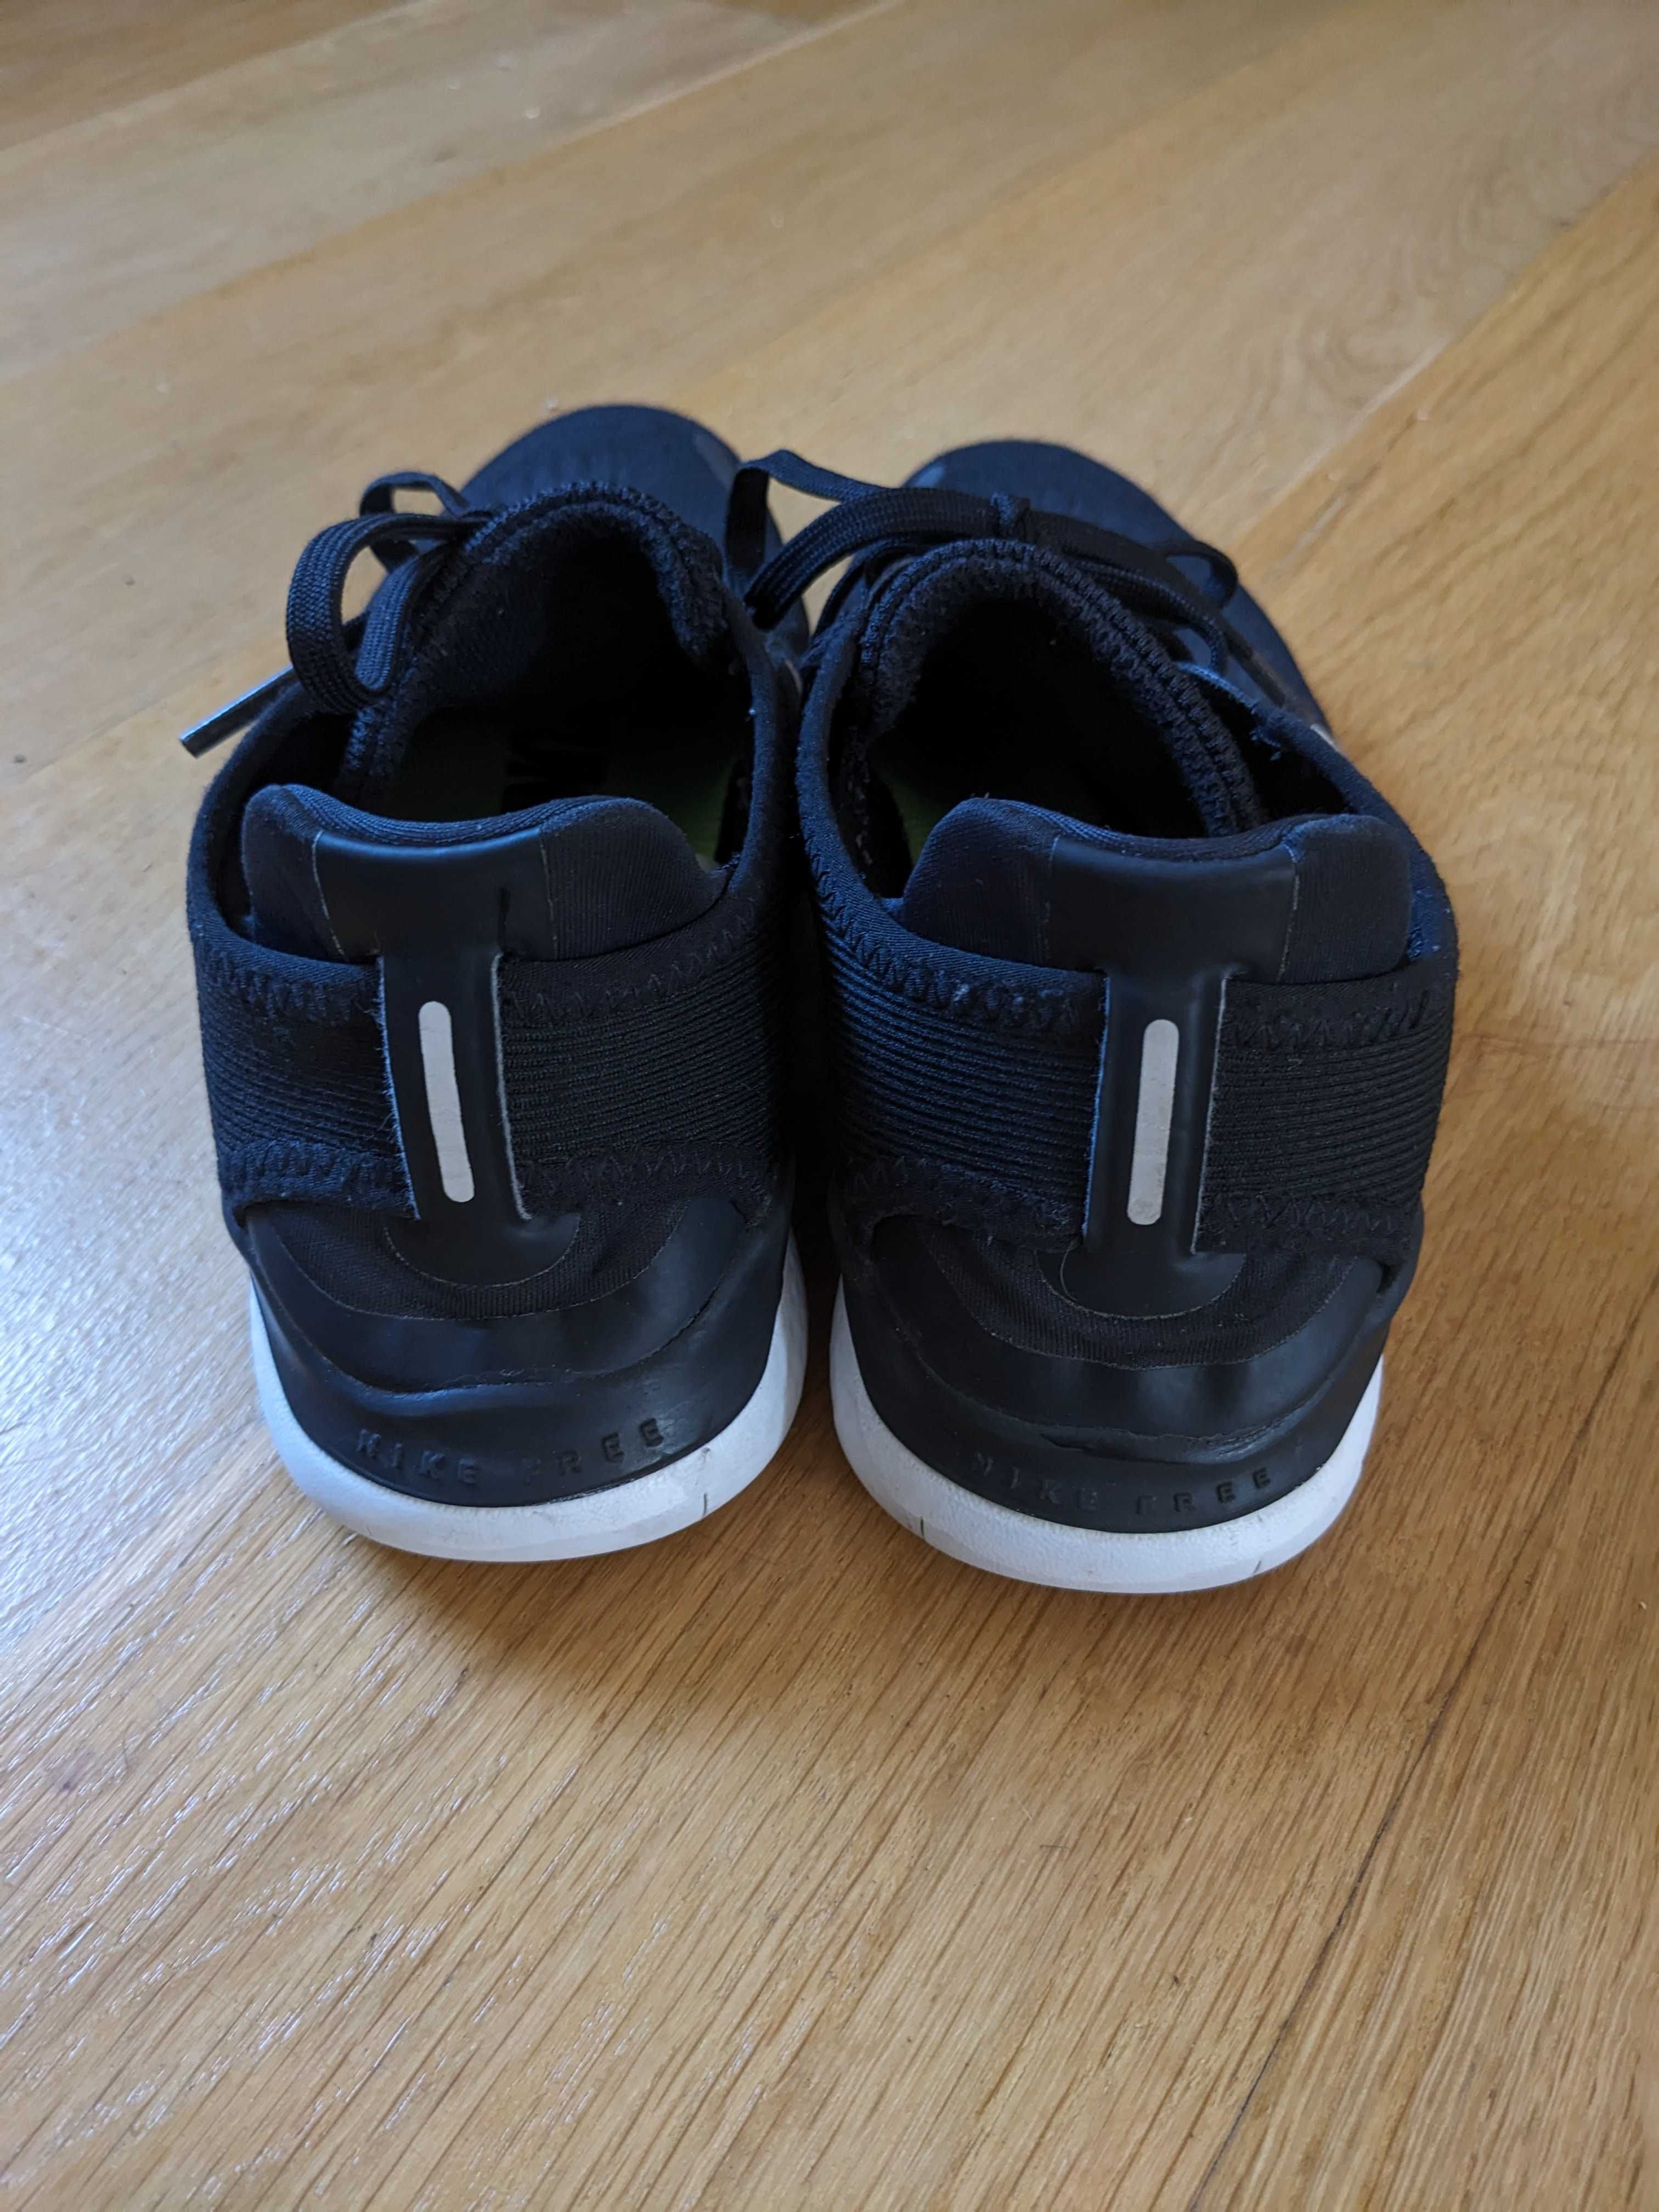 Damskie buty do biegania Nike Free Rn 2018, rozmiar 36.5